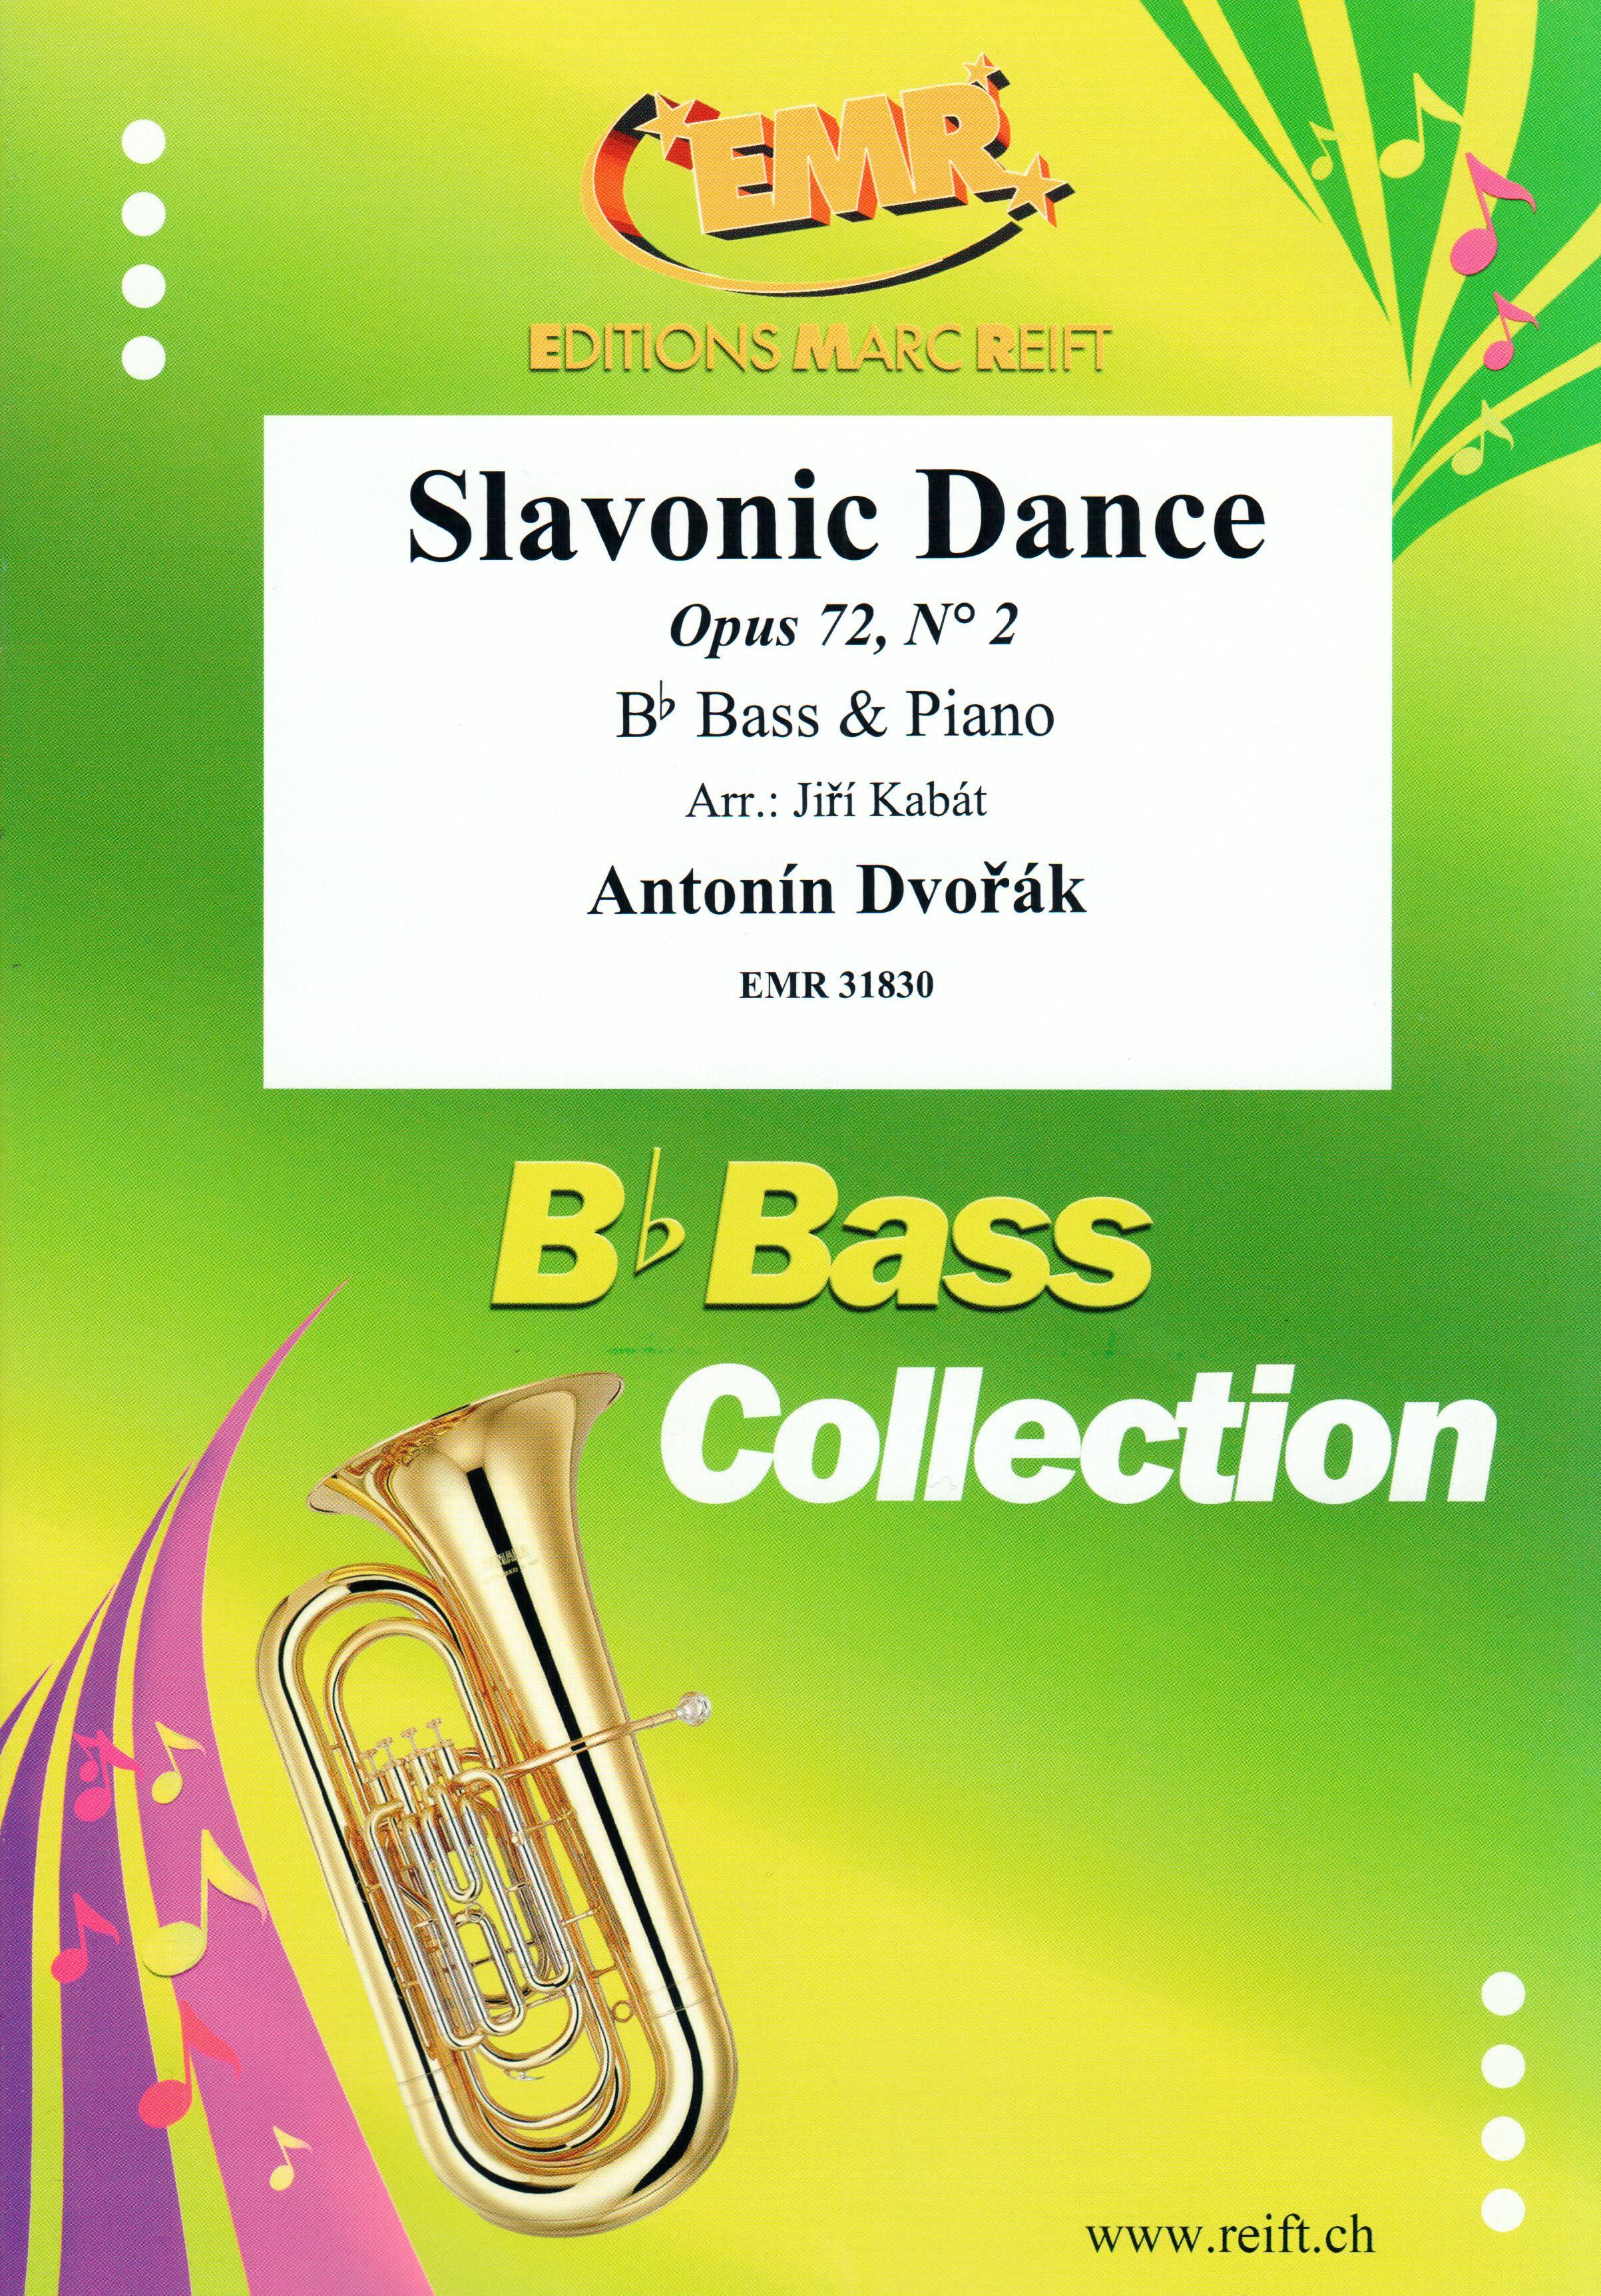 SLAVONIC DANCE, SOLOS - E♭. Bass